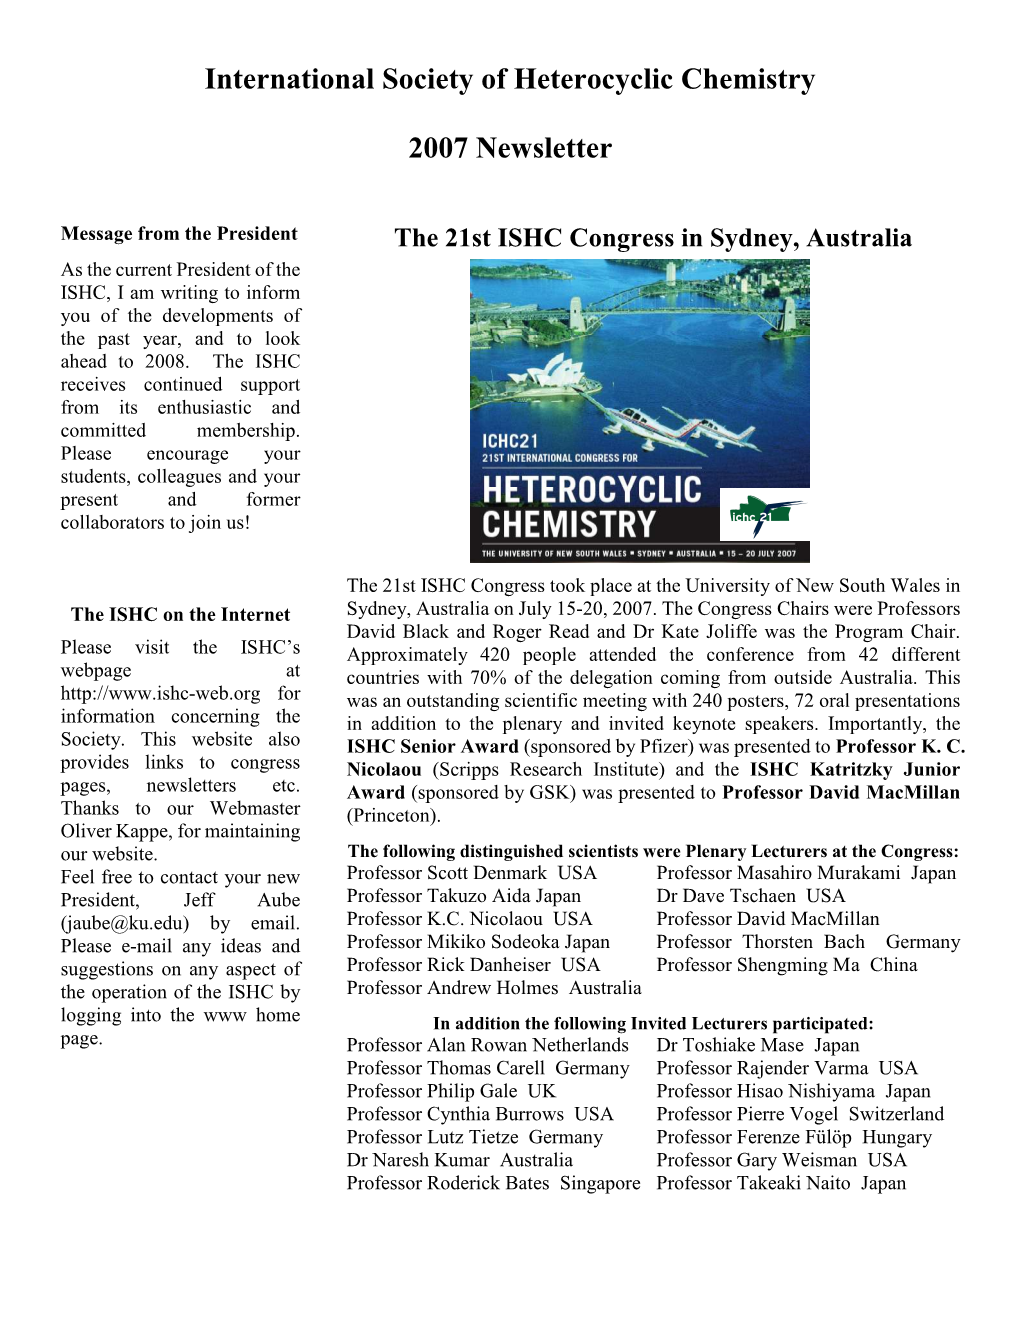 International Society of Heterocyclic Chemistry 2007 Newsletter